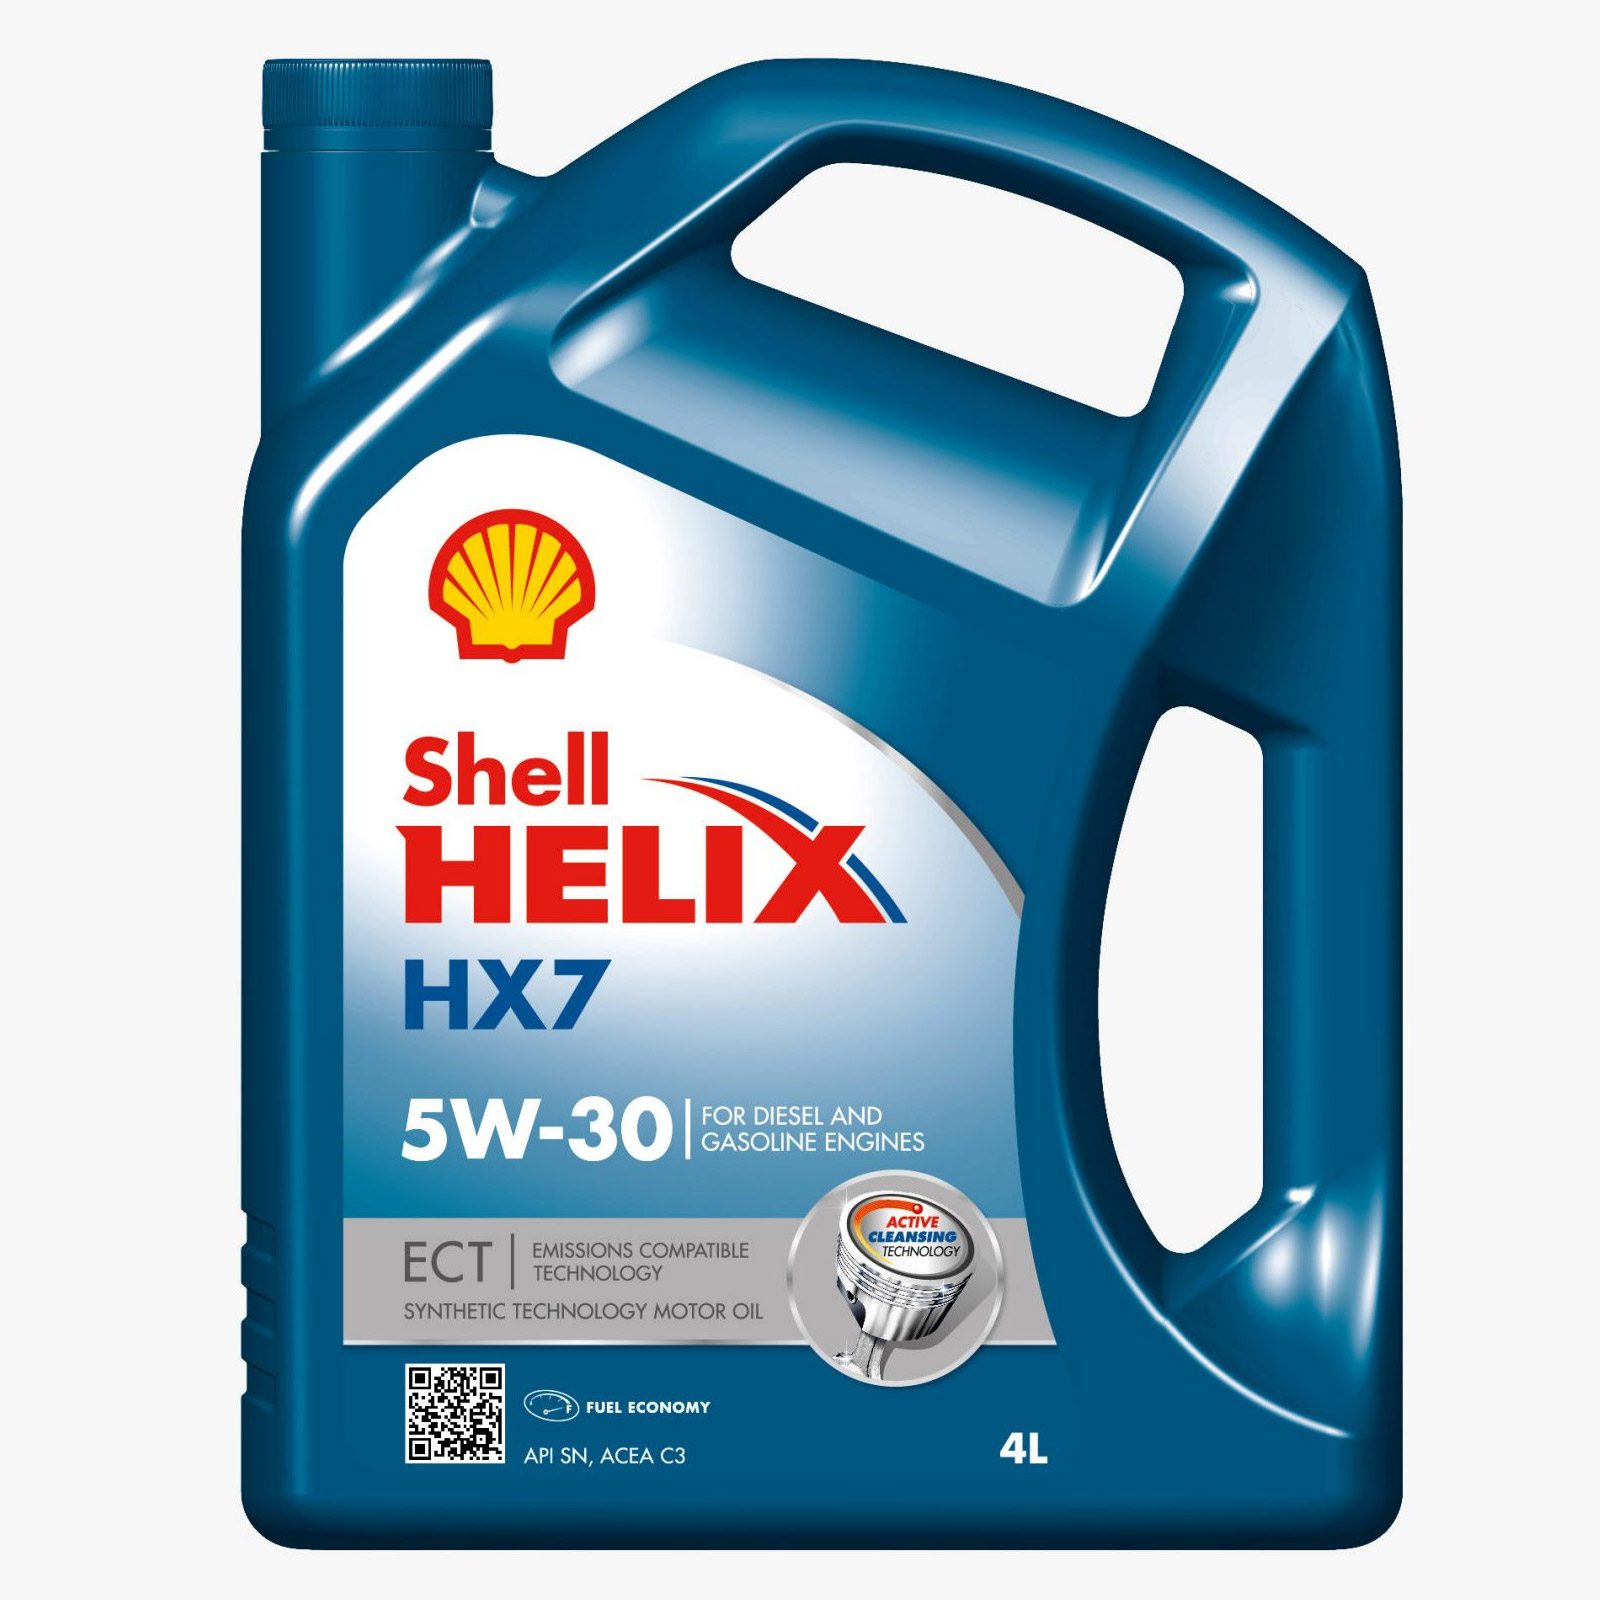 SHELL HELIX HX7 ECT 5W-30